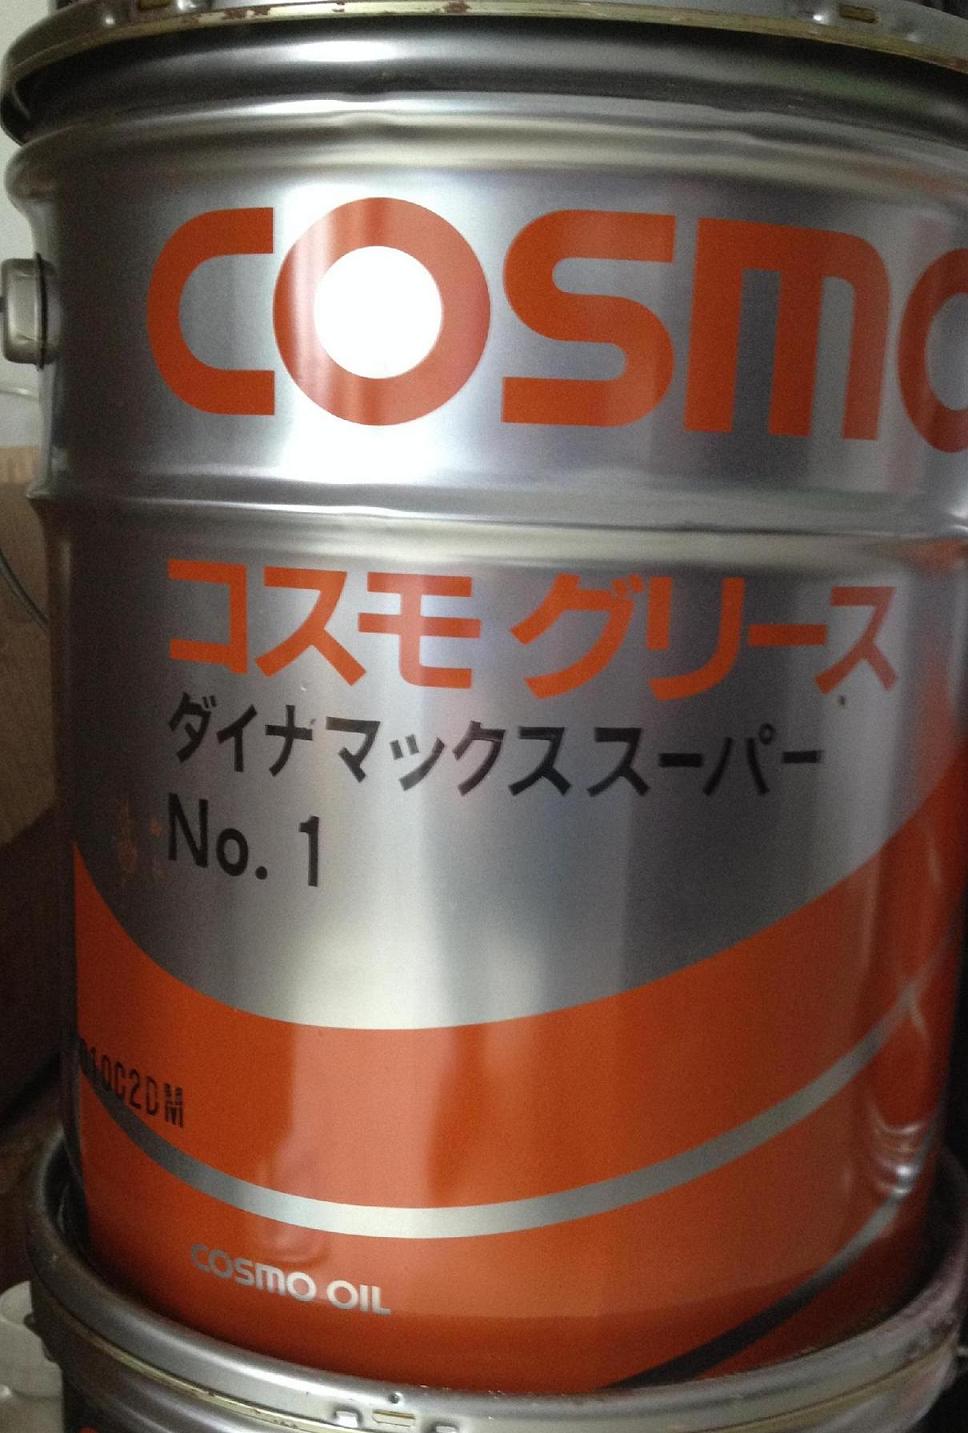 COSMO NO.1 GREASE